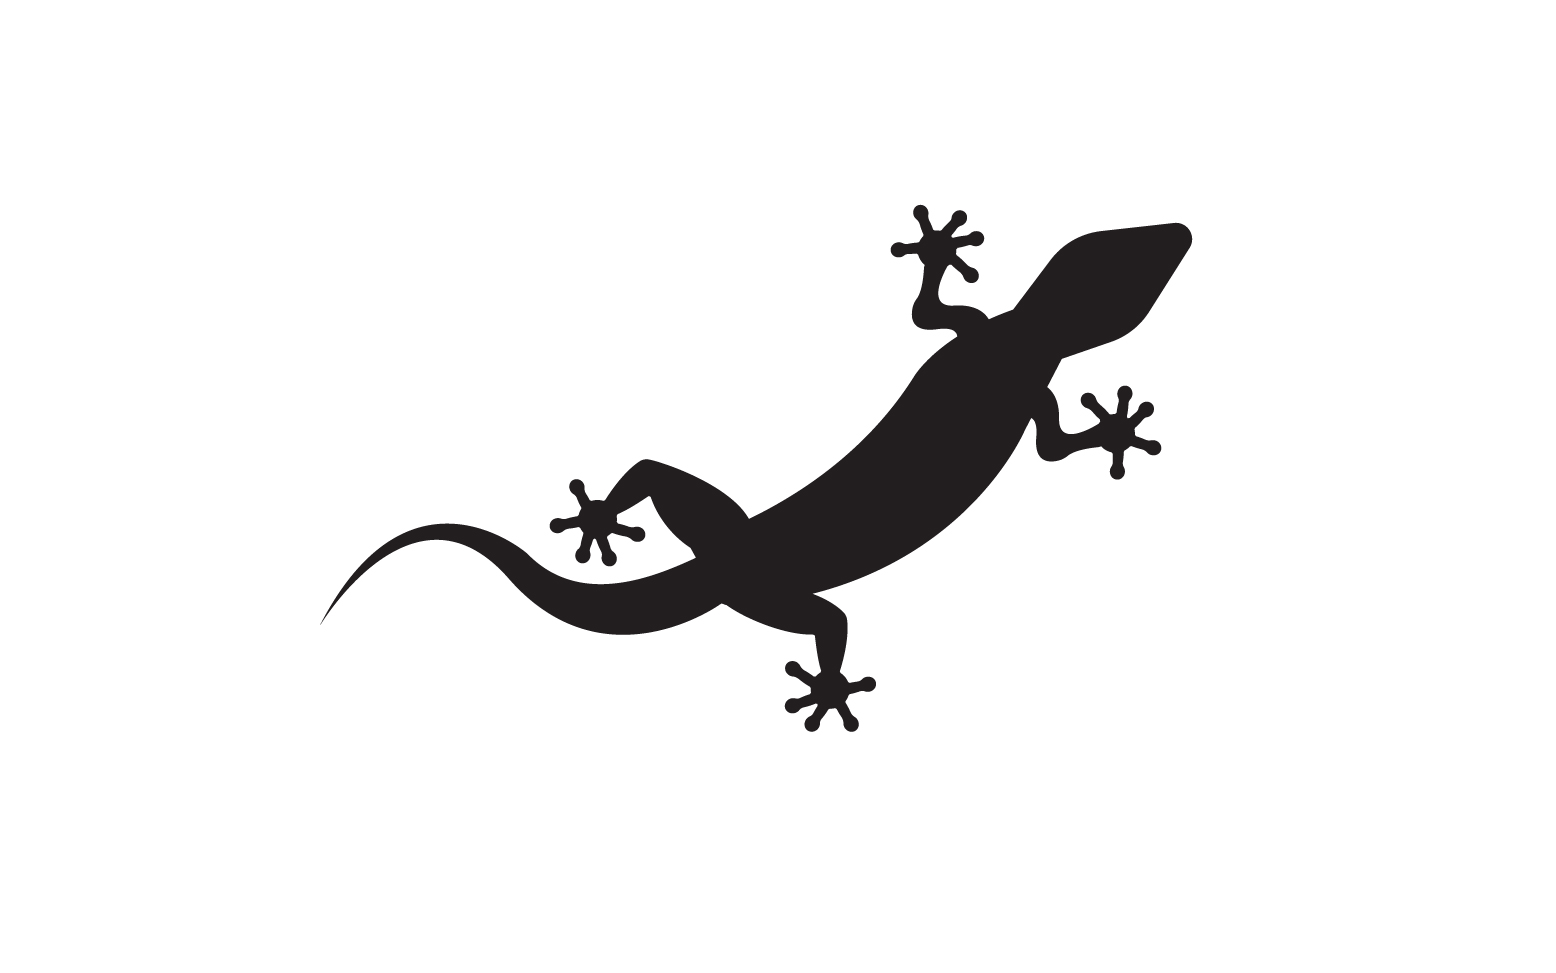 Lizard chameleon home lizard logo v31